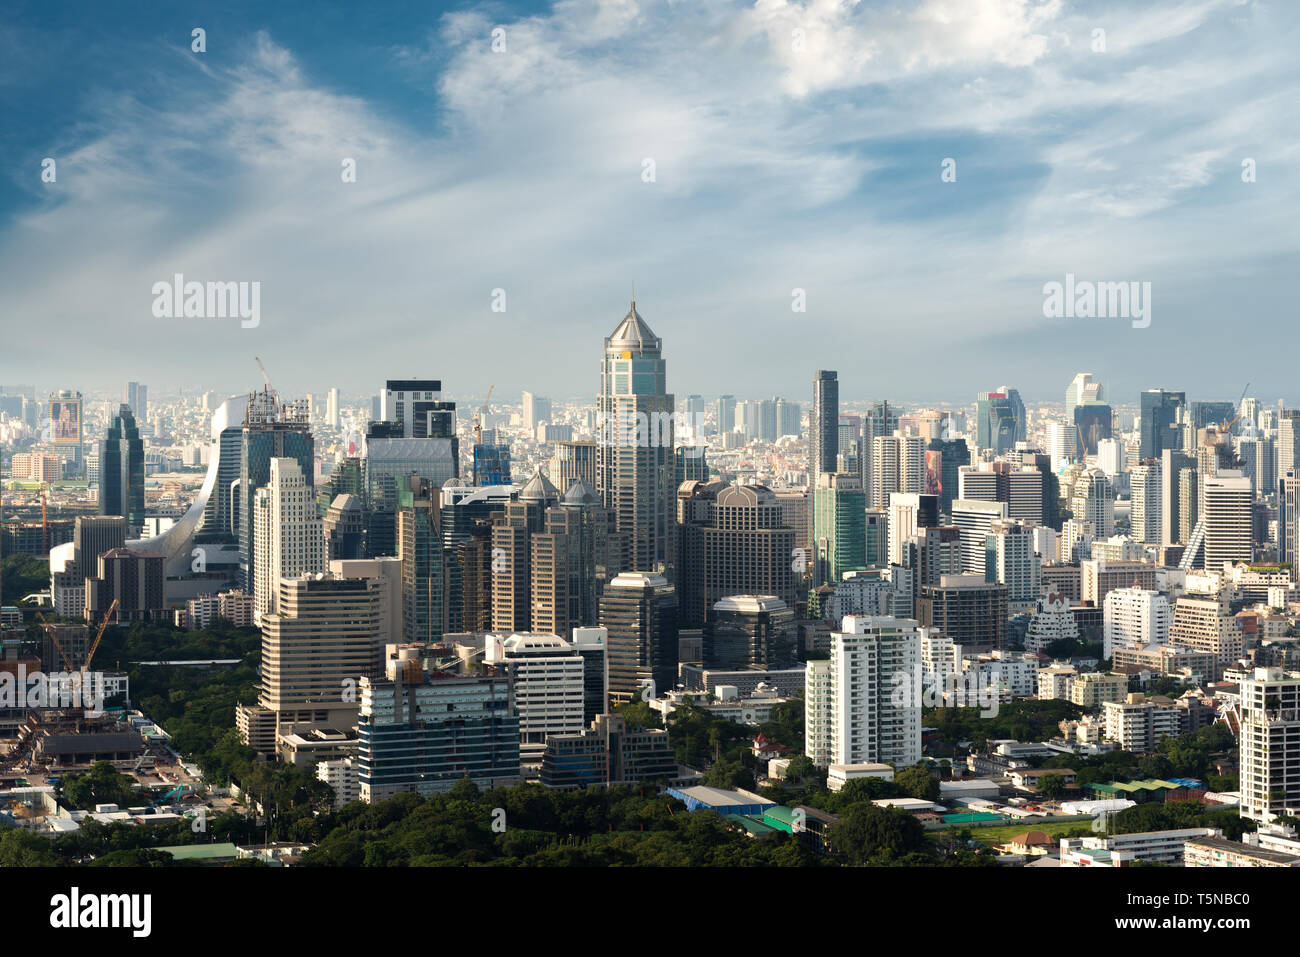 Immeuble moderne dans le quartier des affaires de Bangkok à Bangkok, Thailande avec city skyline. Banque D'Images